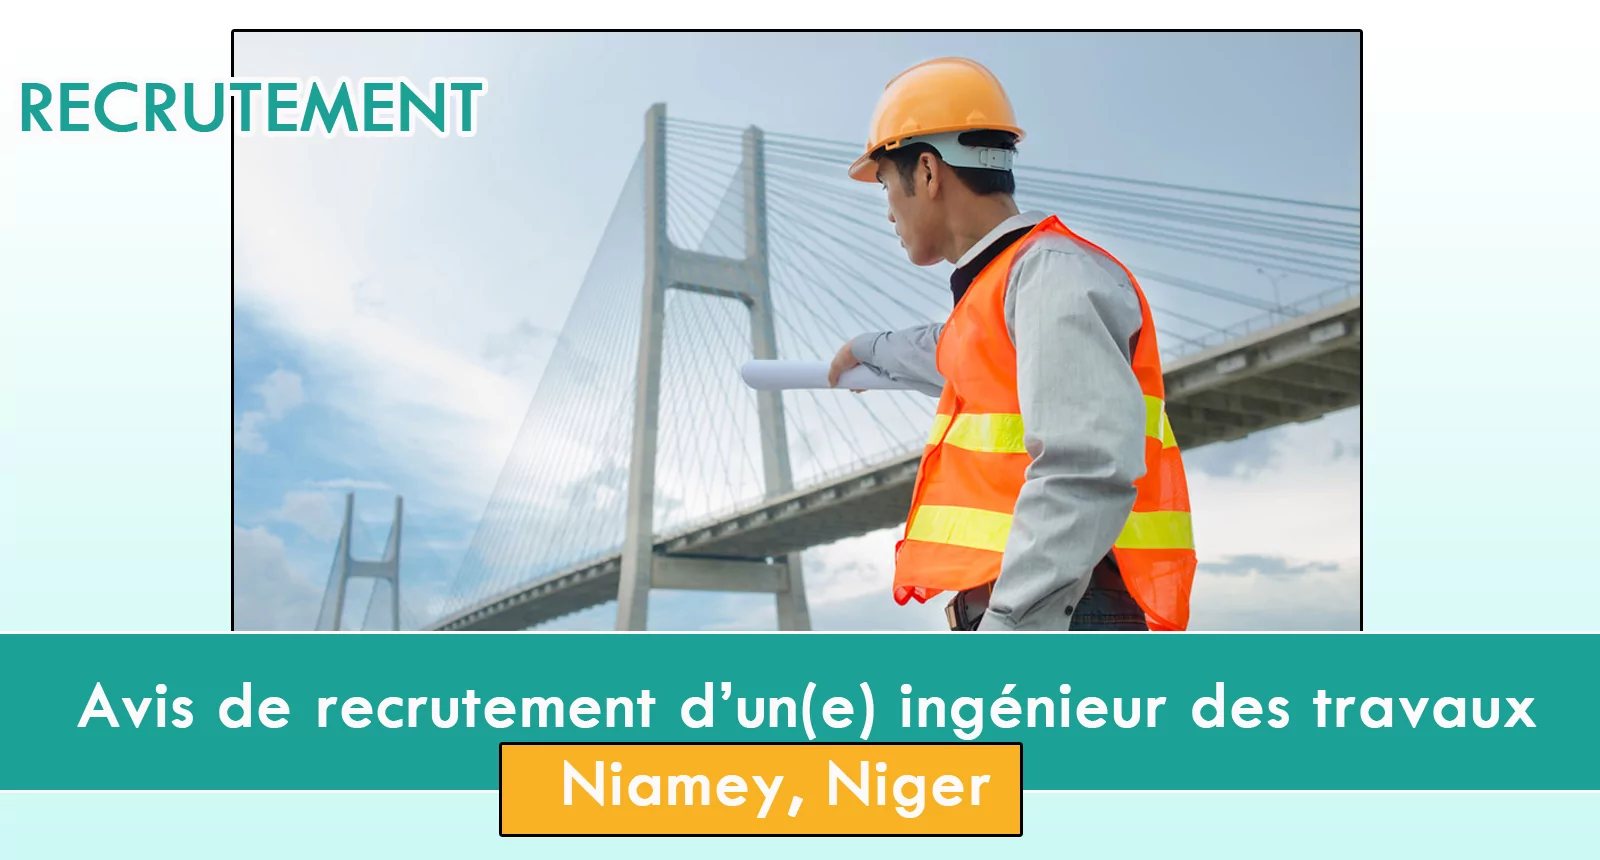 Avis de recrutement d’un(e) ingénieur des travaux, Niamey, Niger